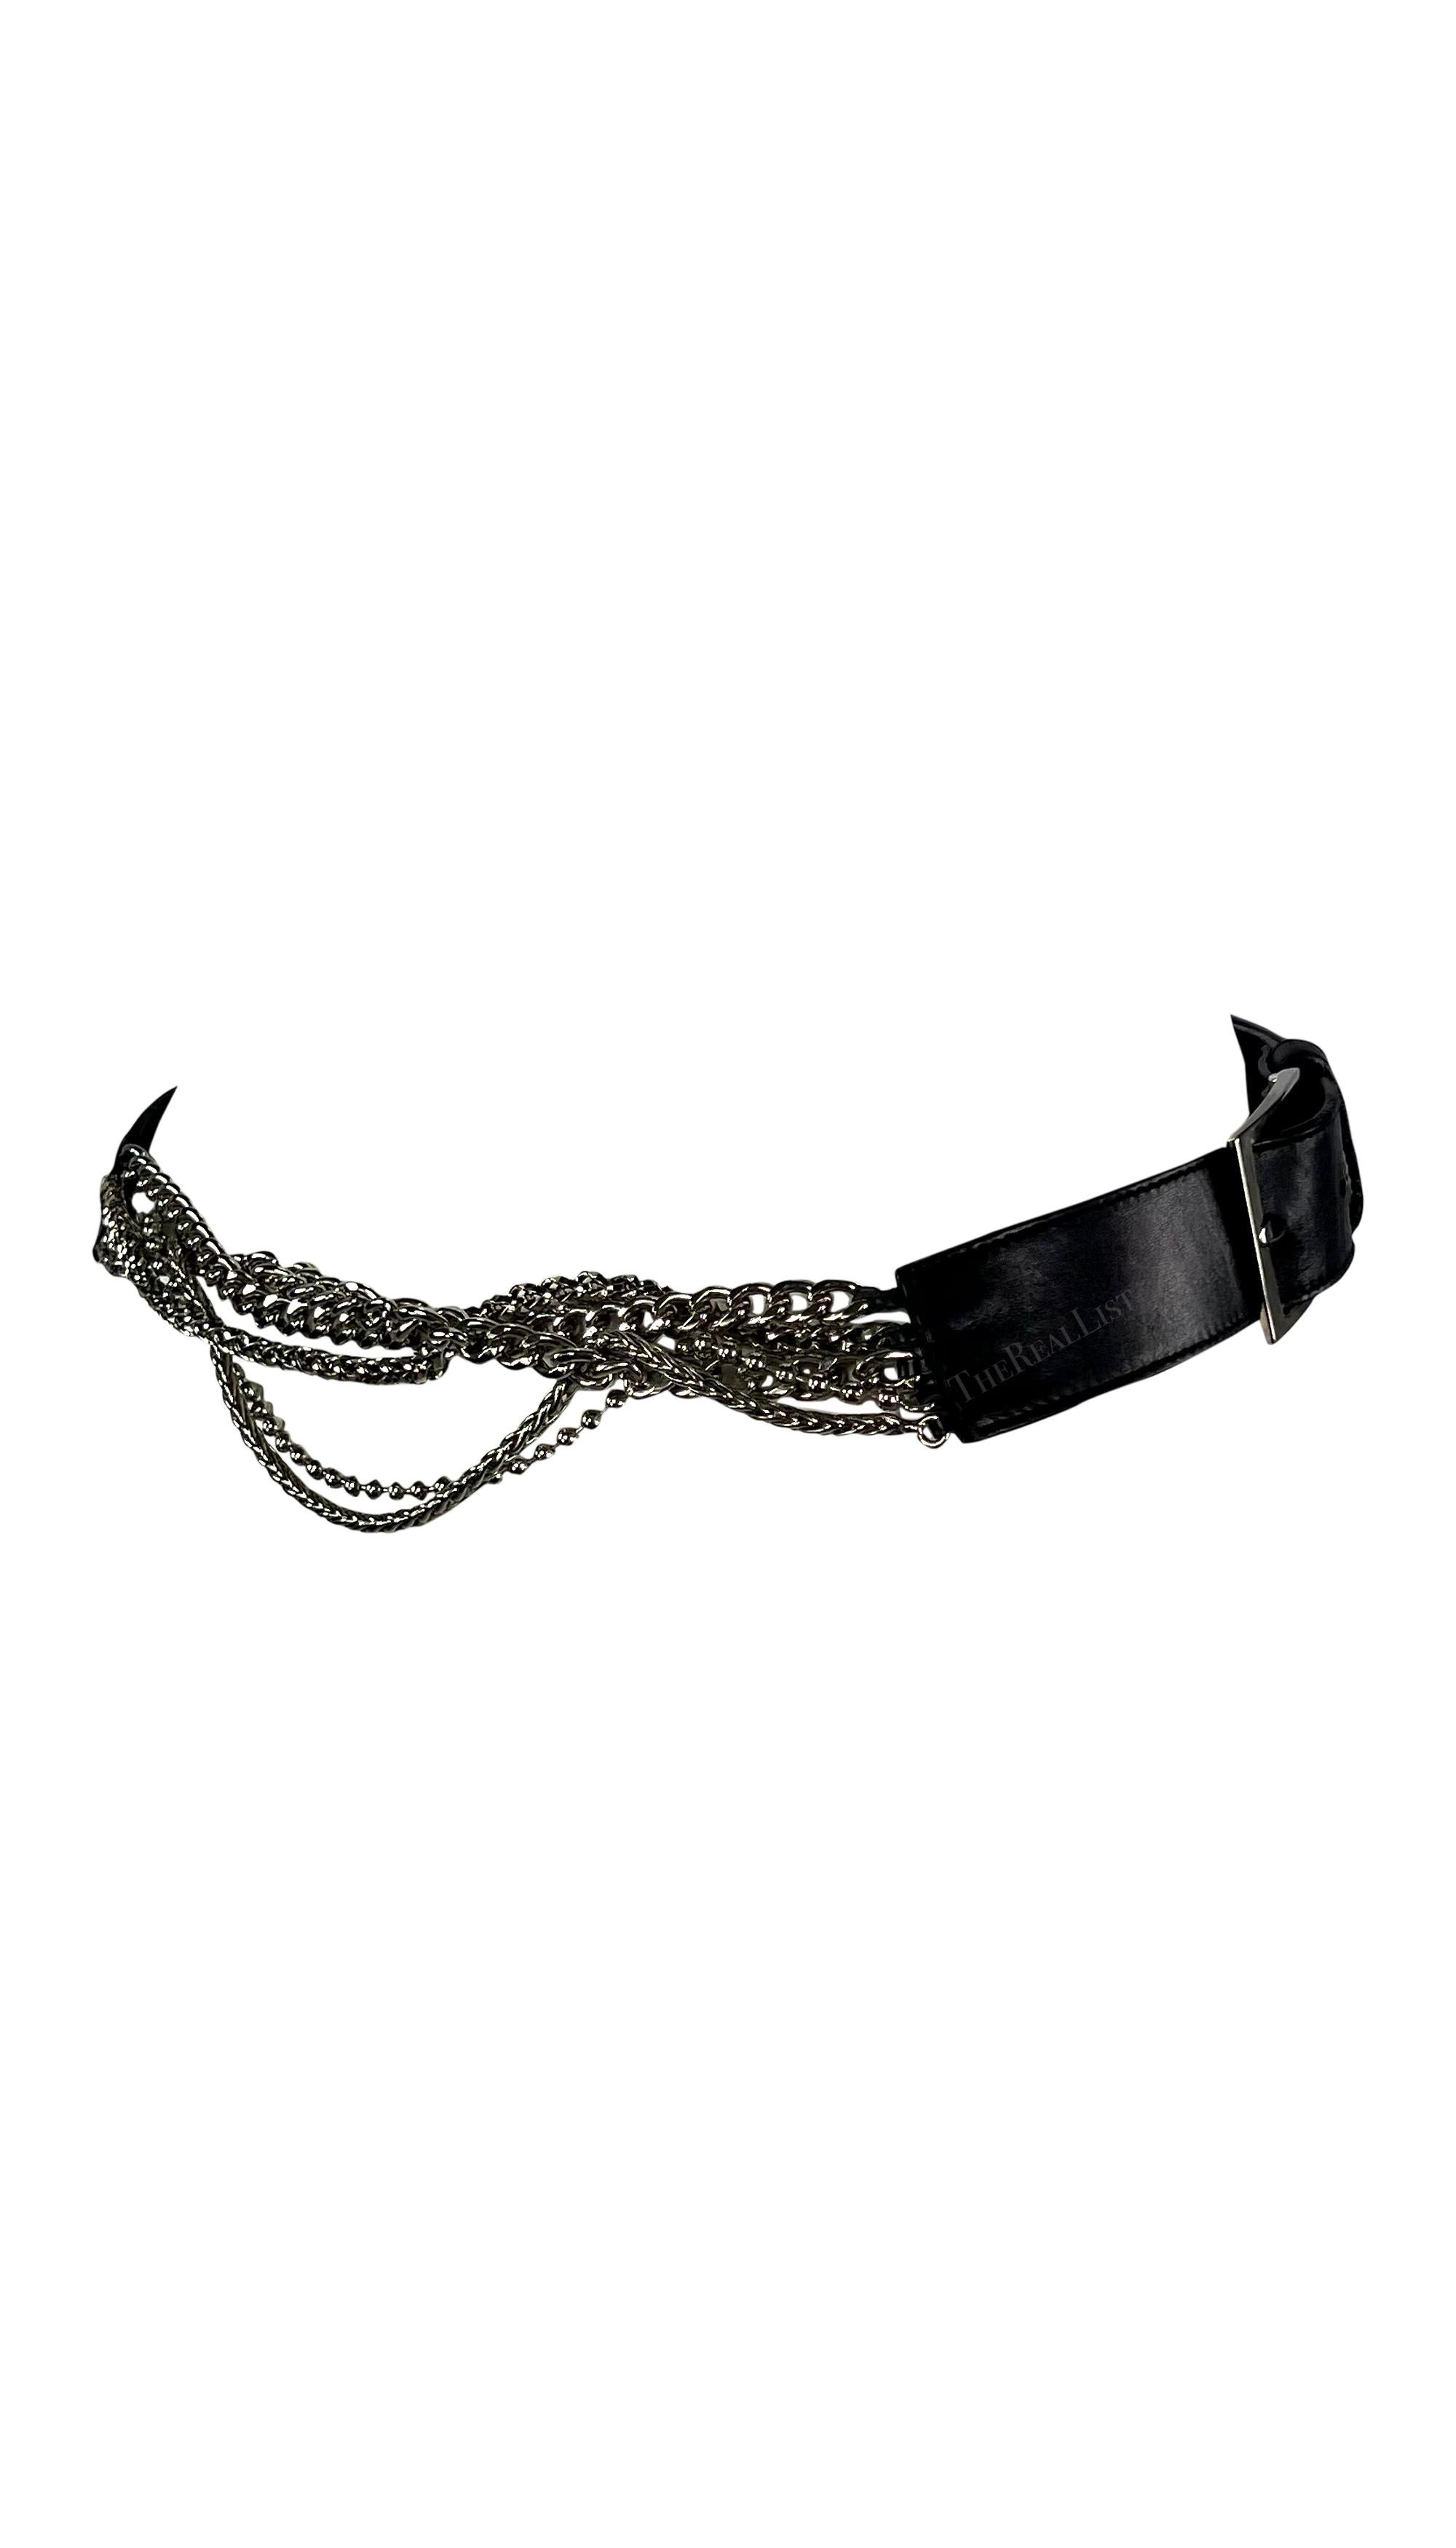 Cette fabuleuse ceinture Versace à chaîne en cuir noir a été conçue par Donatella Versace. Datant du début des années 2000, cette ceinture est composée de cuir et de chaînes en métal chromé. La ceinture comporte deux boucles carrées et est complétée